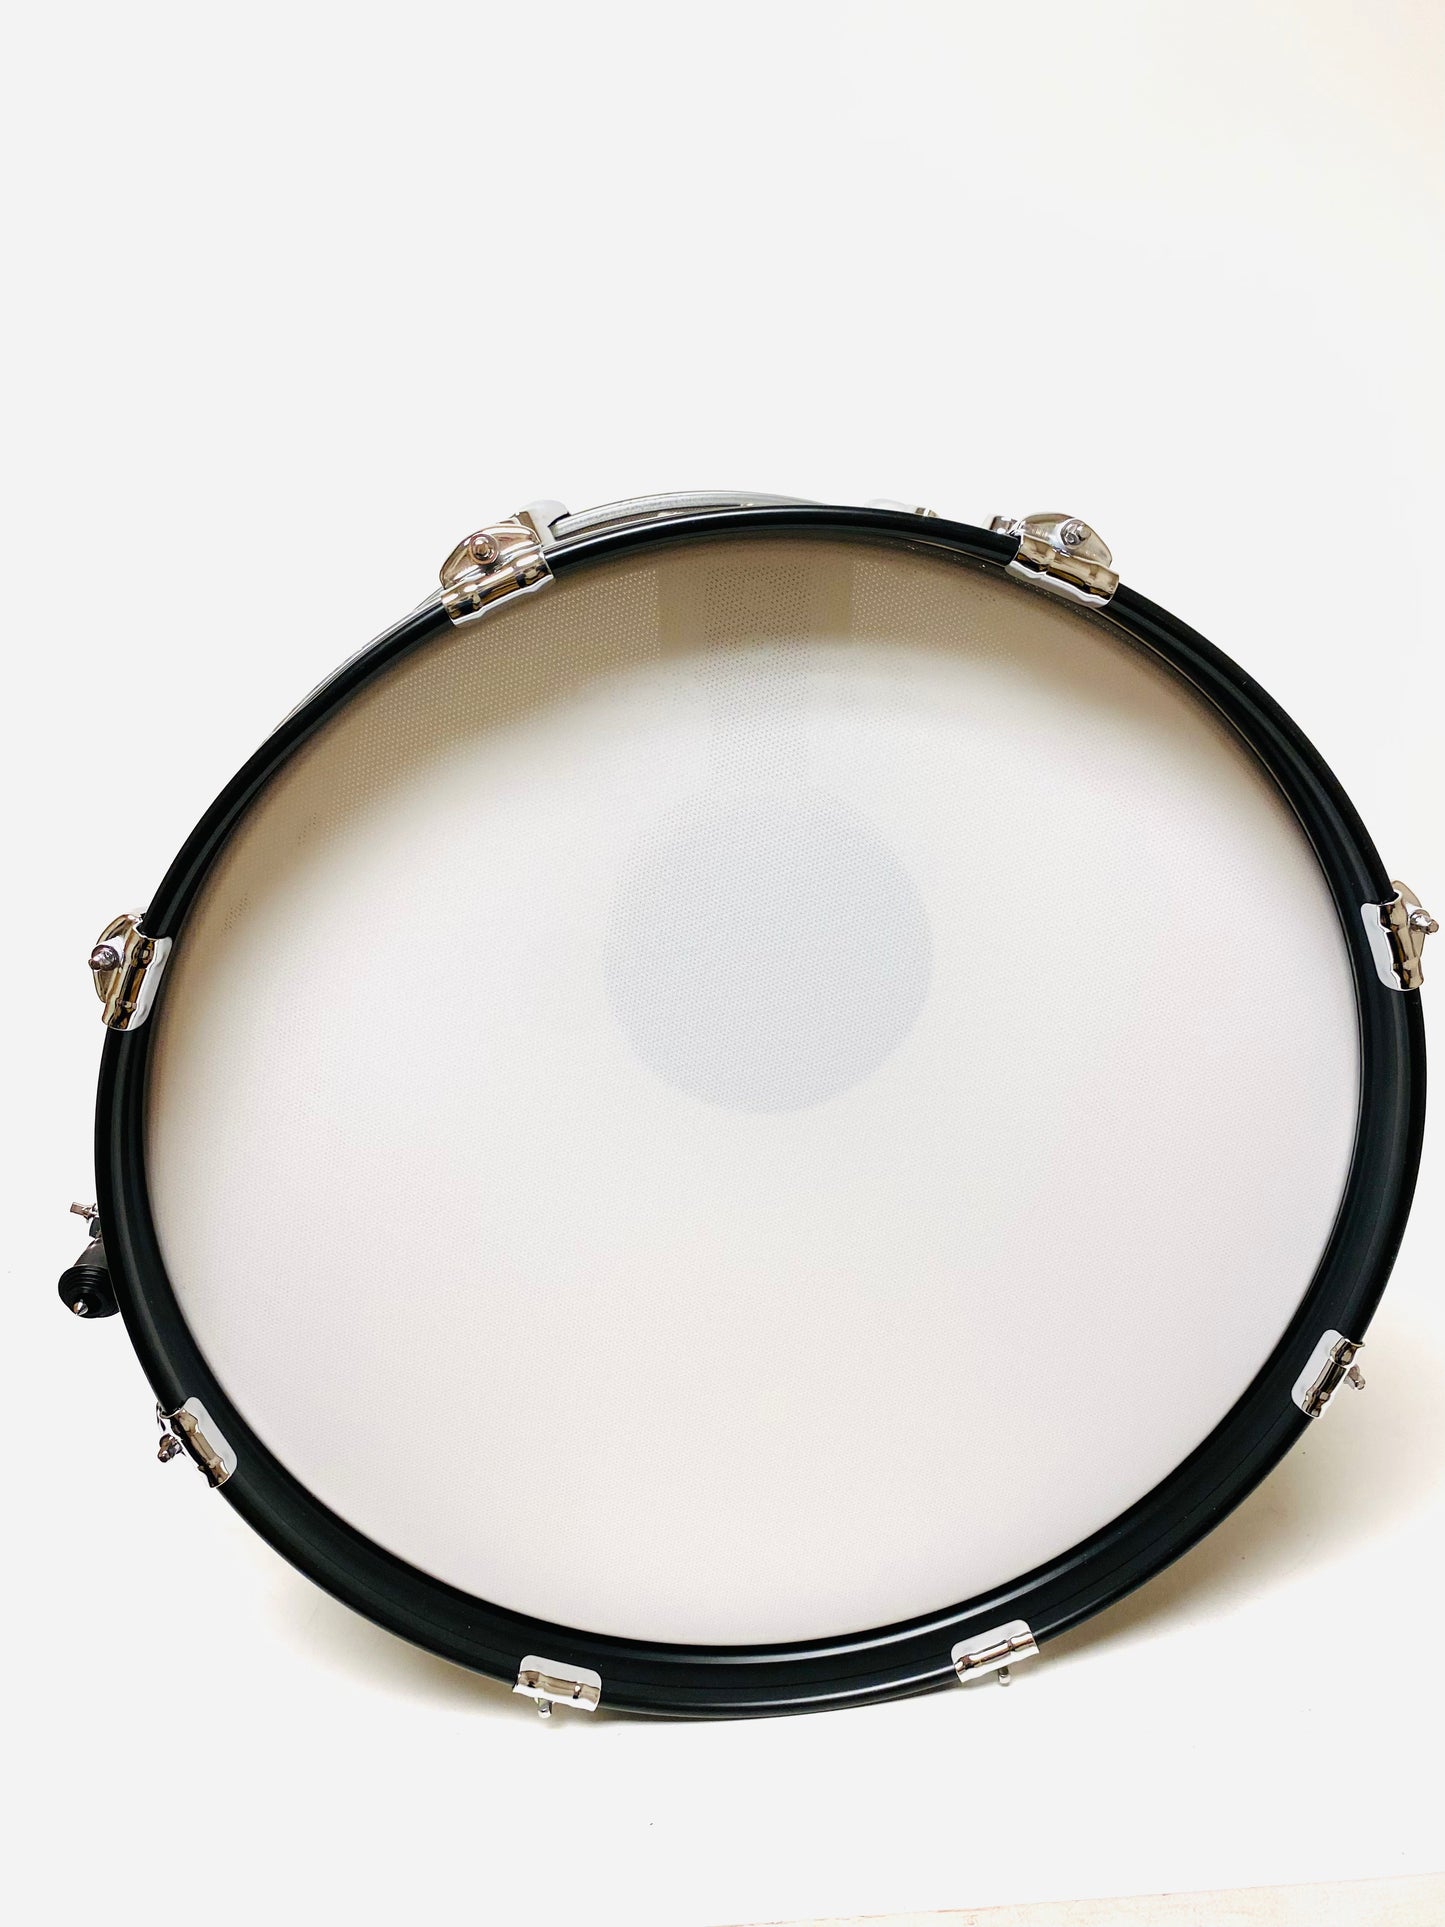 Lemon (20”x12”) Black Sparkle Bass Kick Drum for Roland Alesis